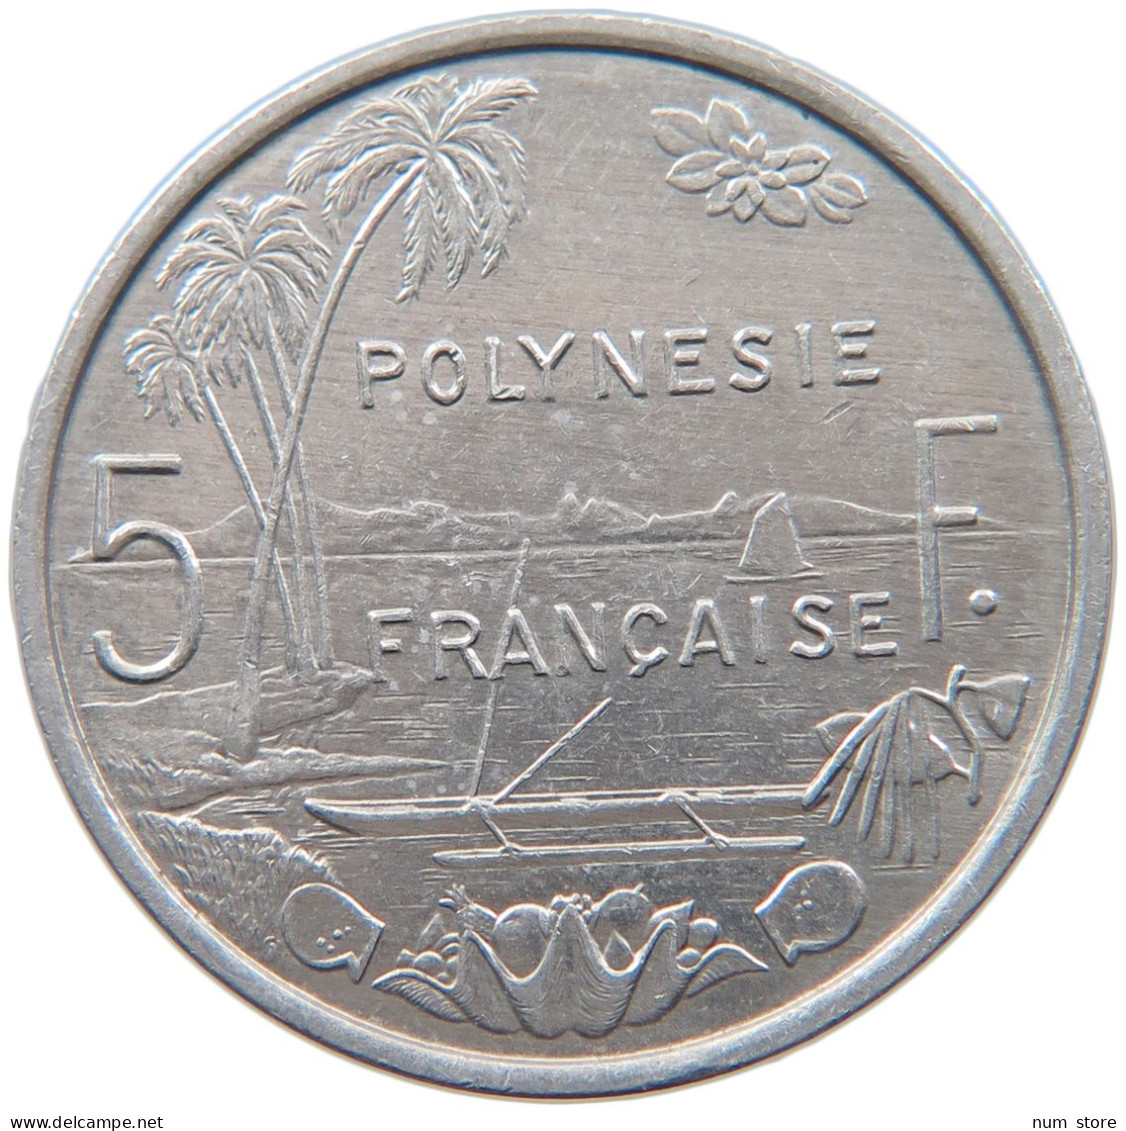 FRENCH POLYNESIA 5 FRANCS 1994 #s098 0225 - French Polynesia